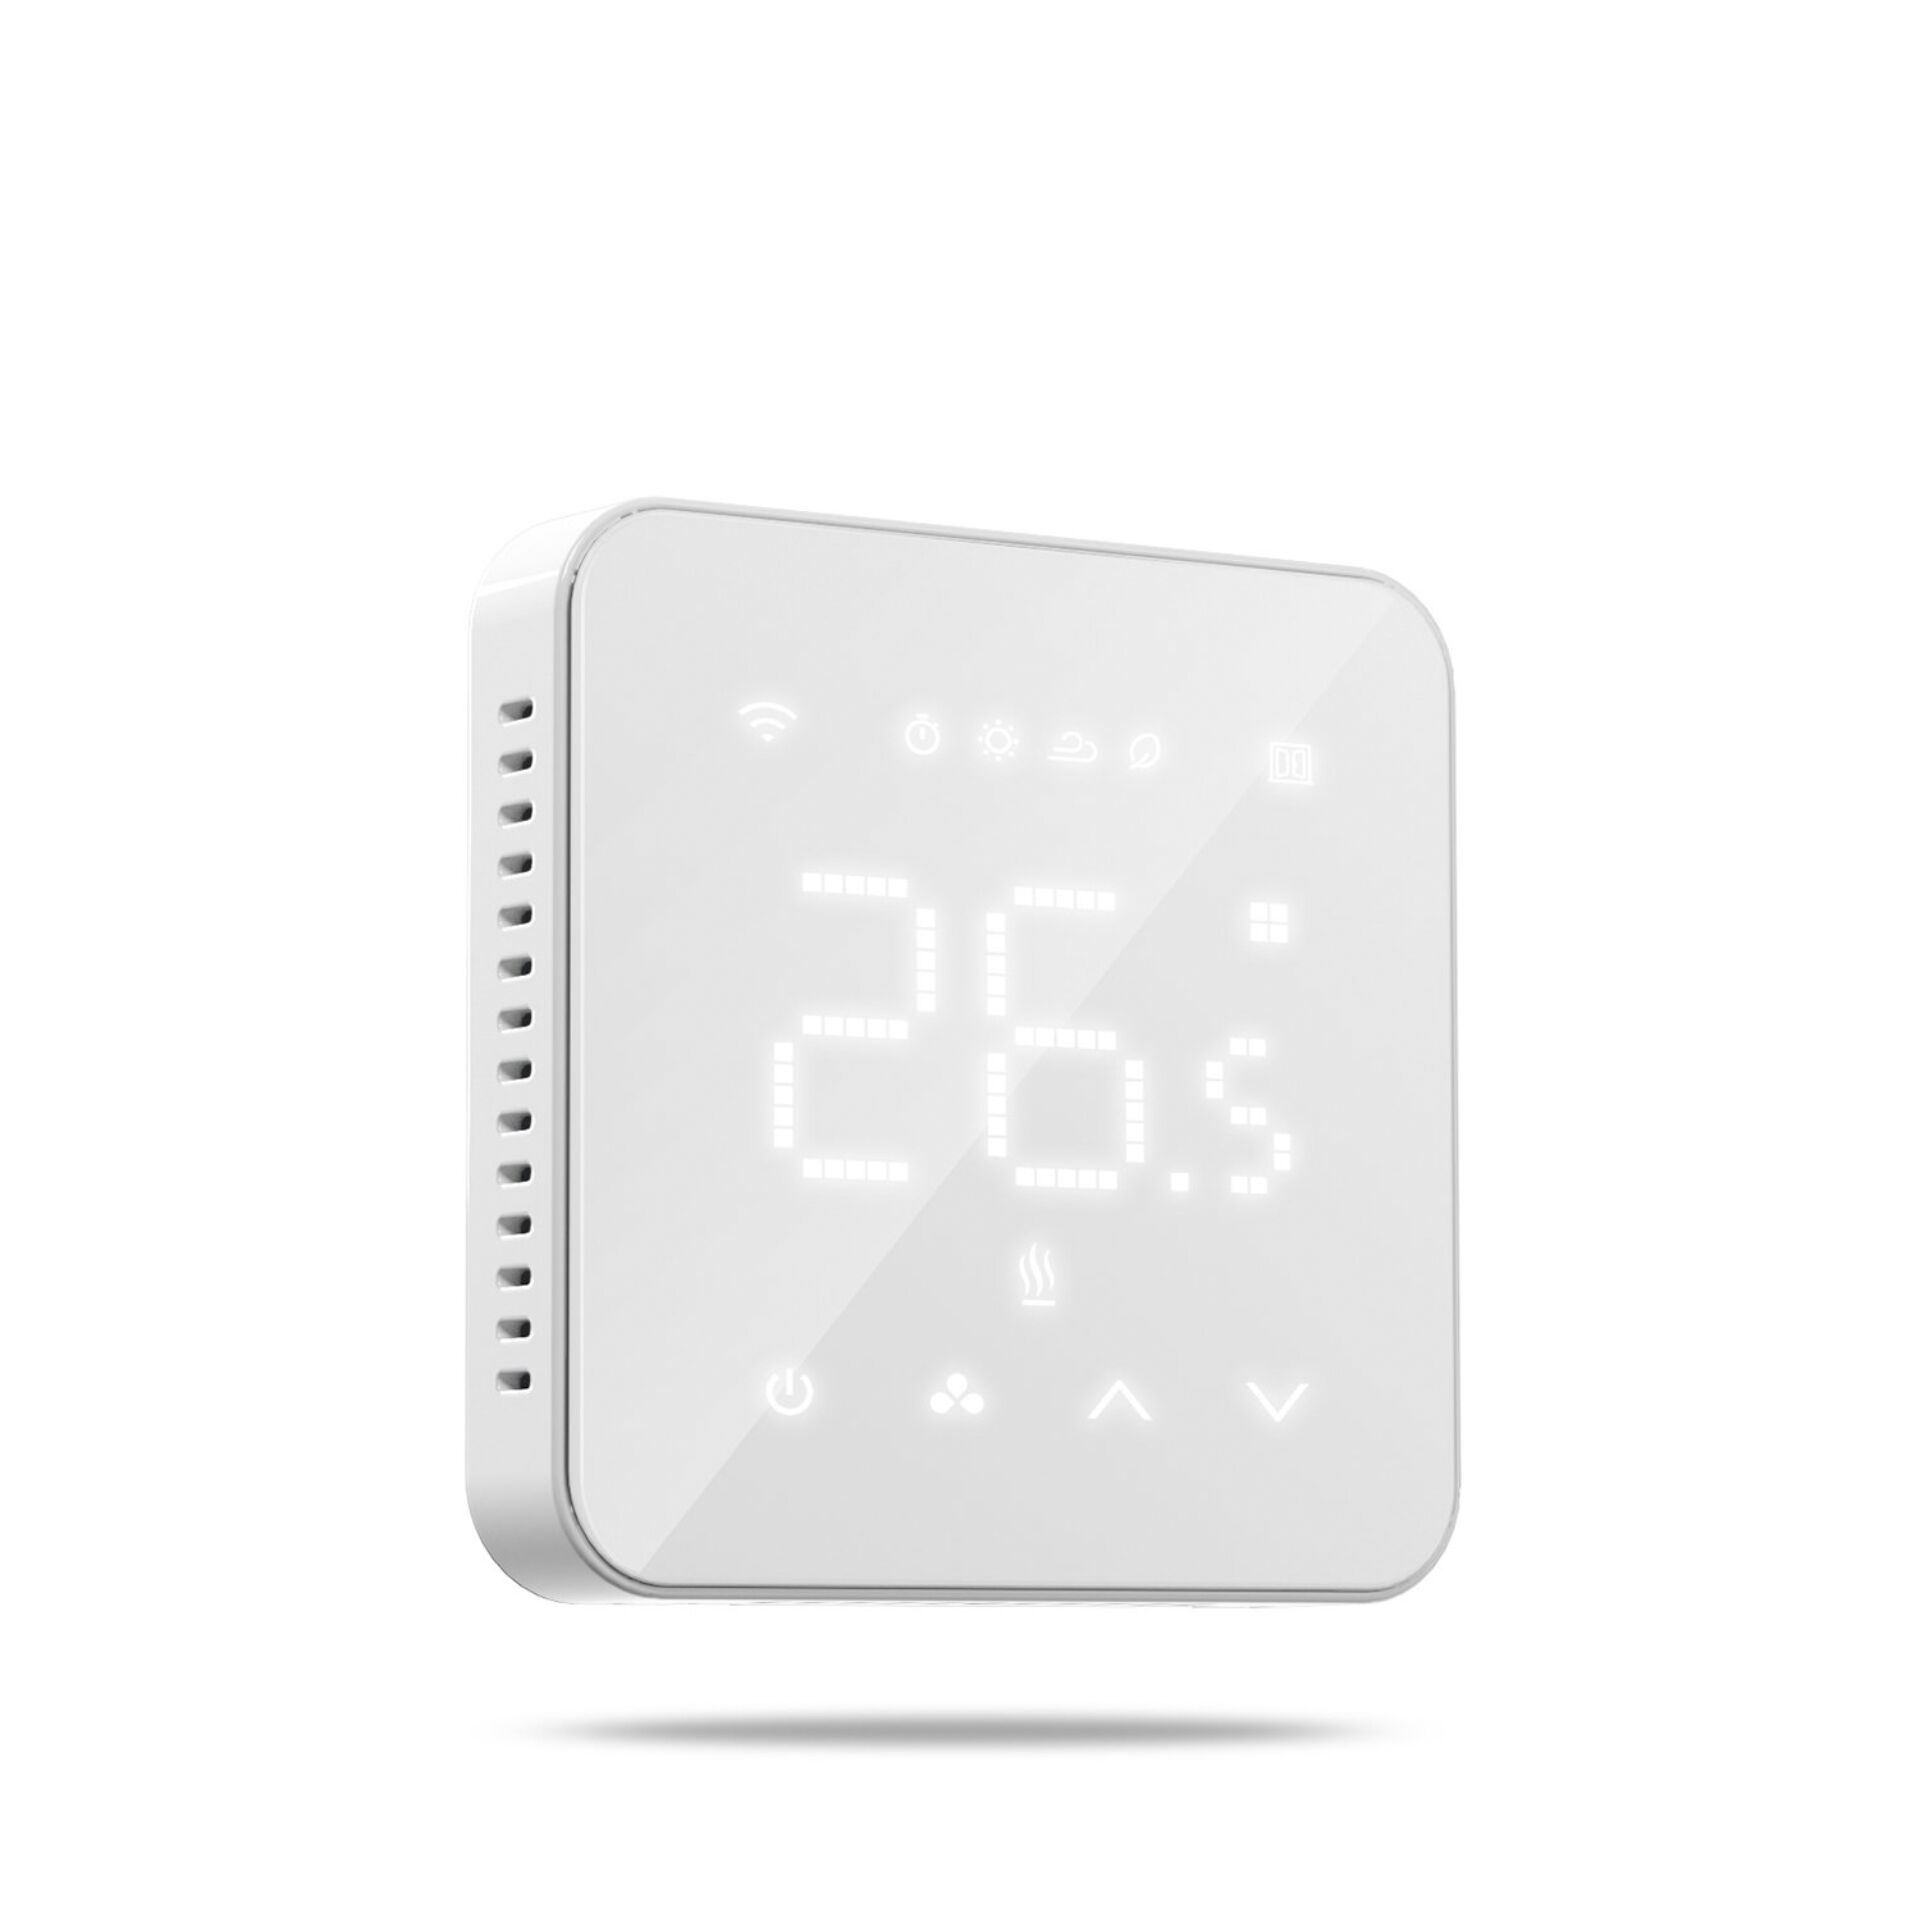 Meross Smart Wi-Fi Thermostat für Heizkörpersteuerung